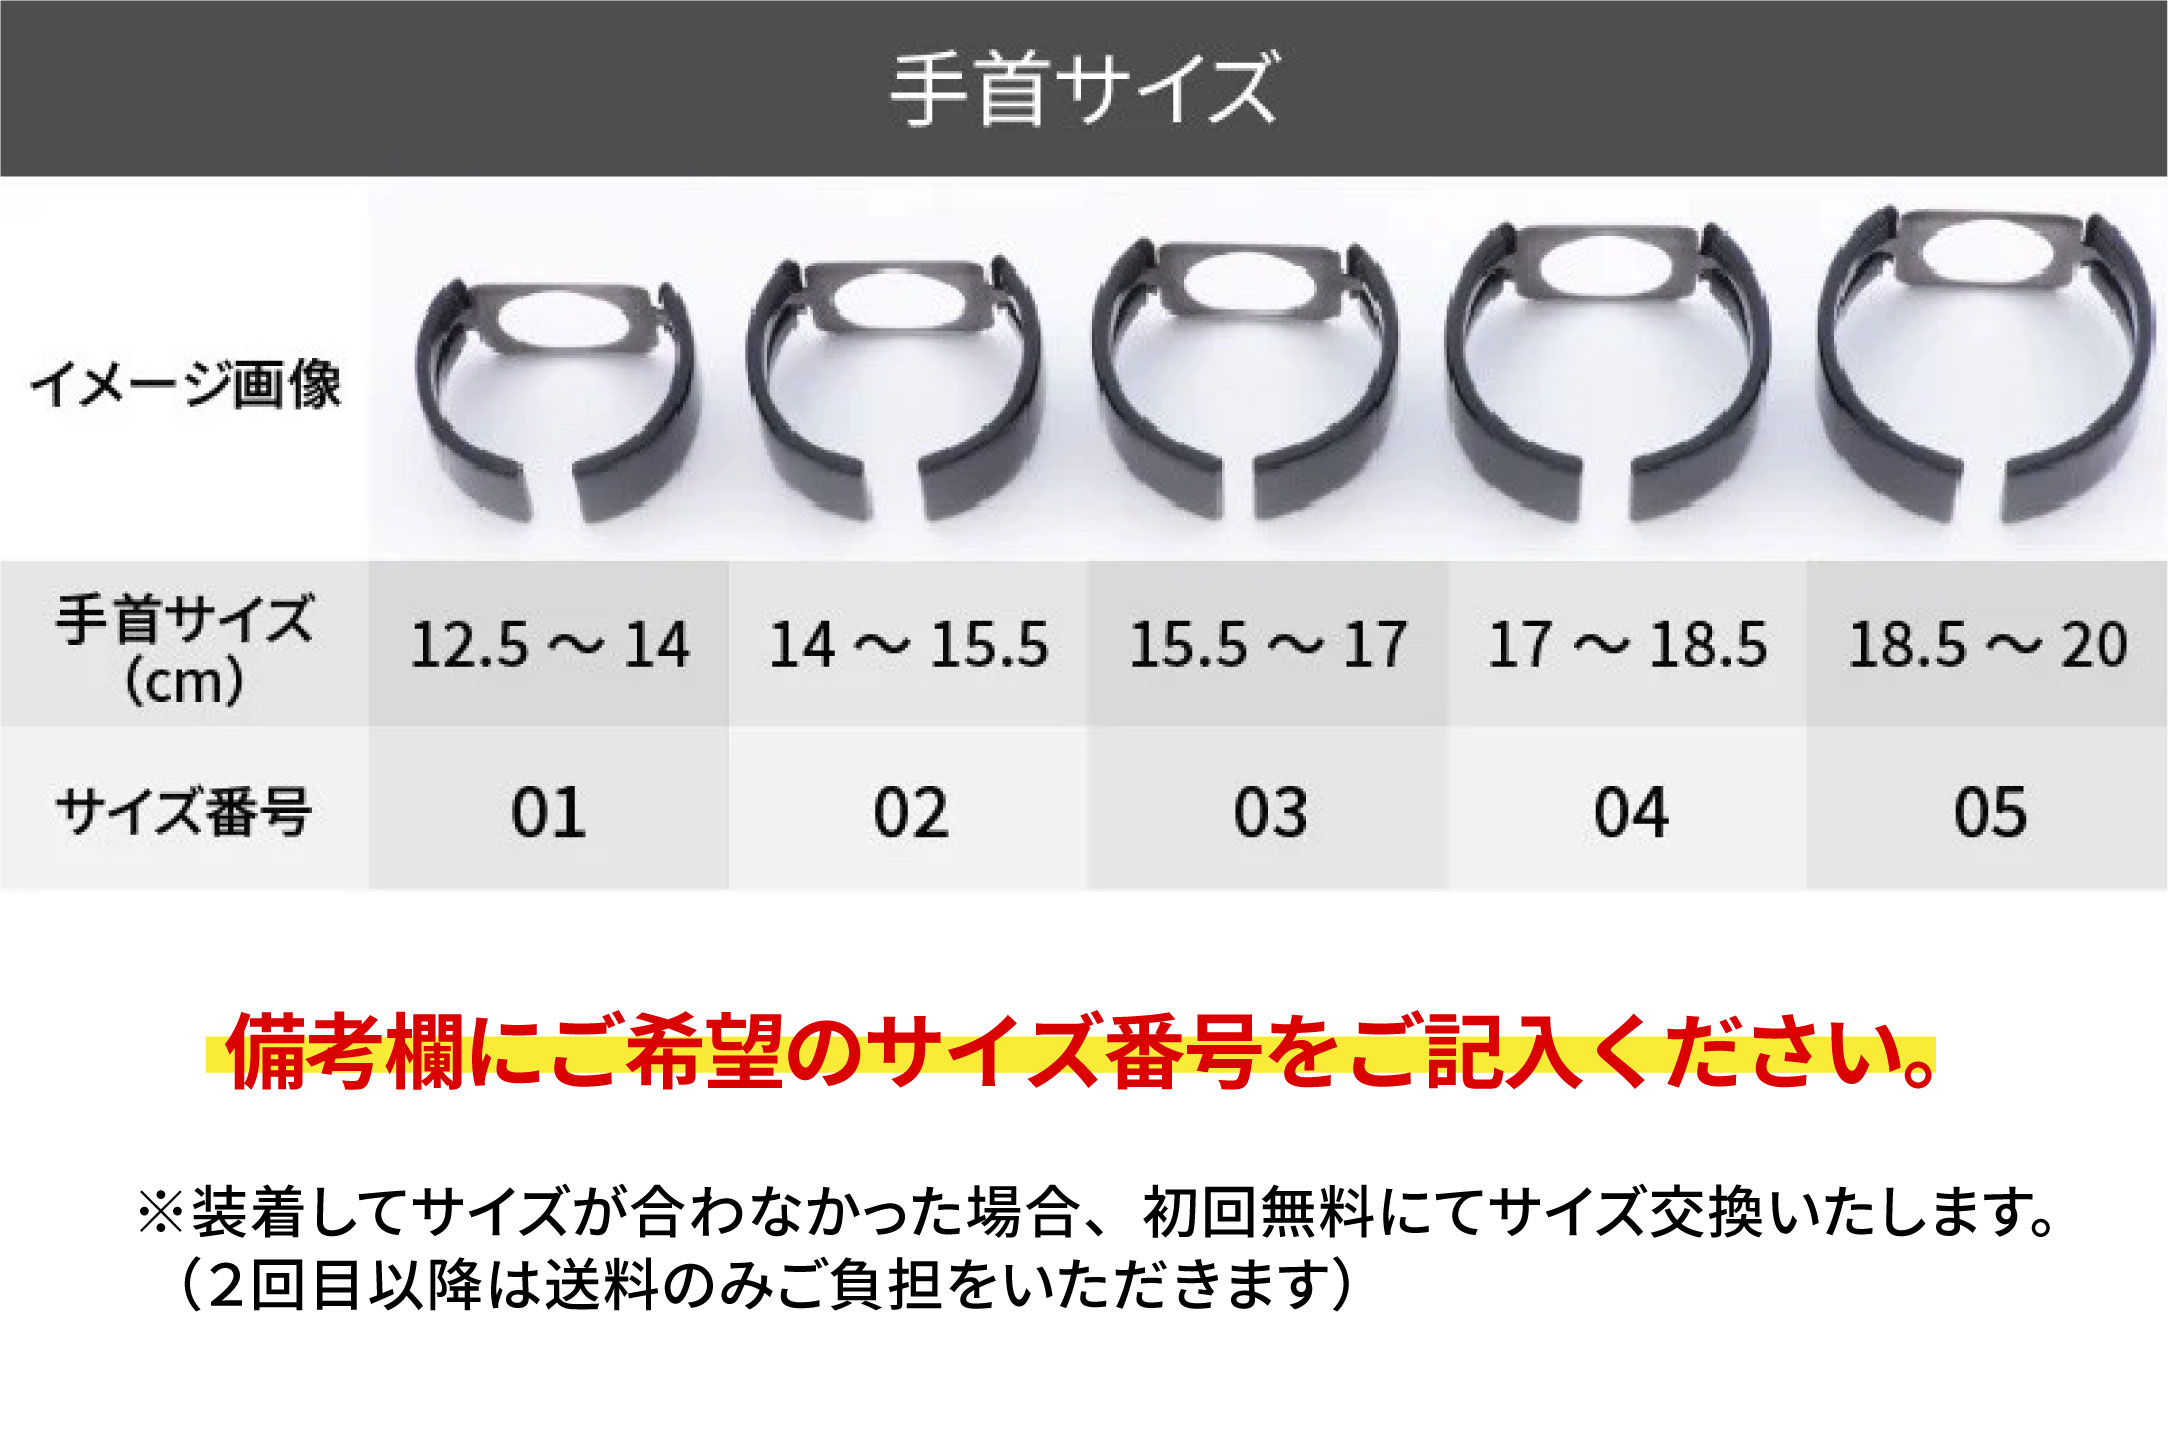 Apple Watch 専用バンド 「Air bangle」 マロンチェック（38 / 40 / 41モデル）アダプタ シルバー